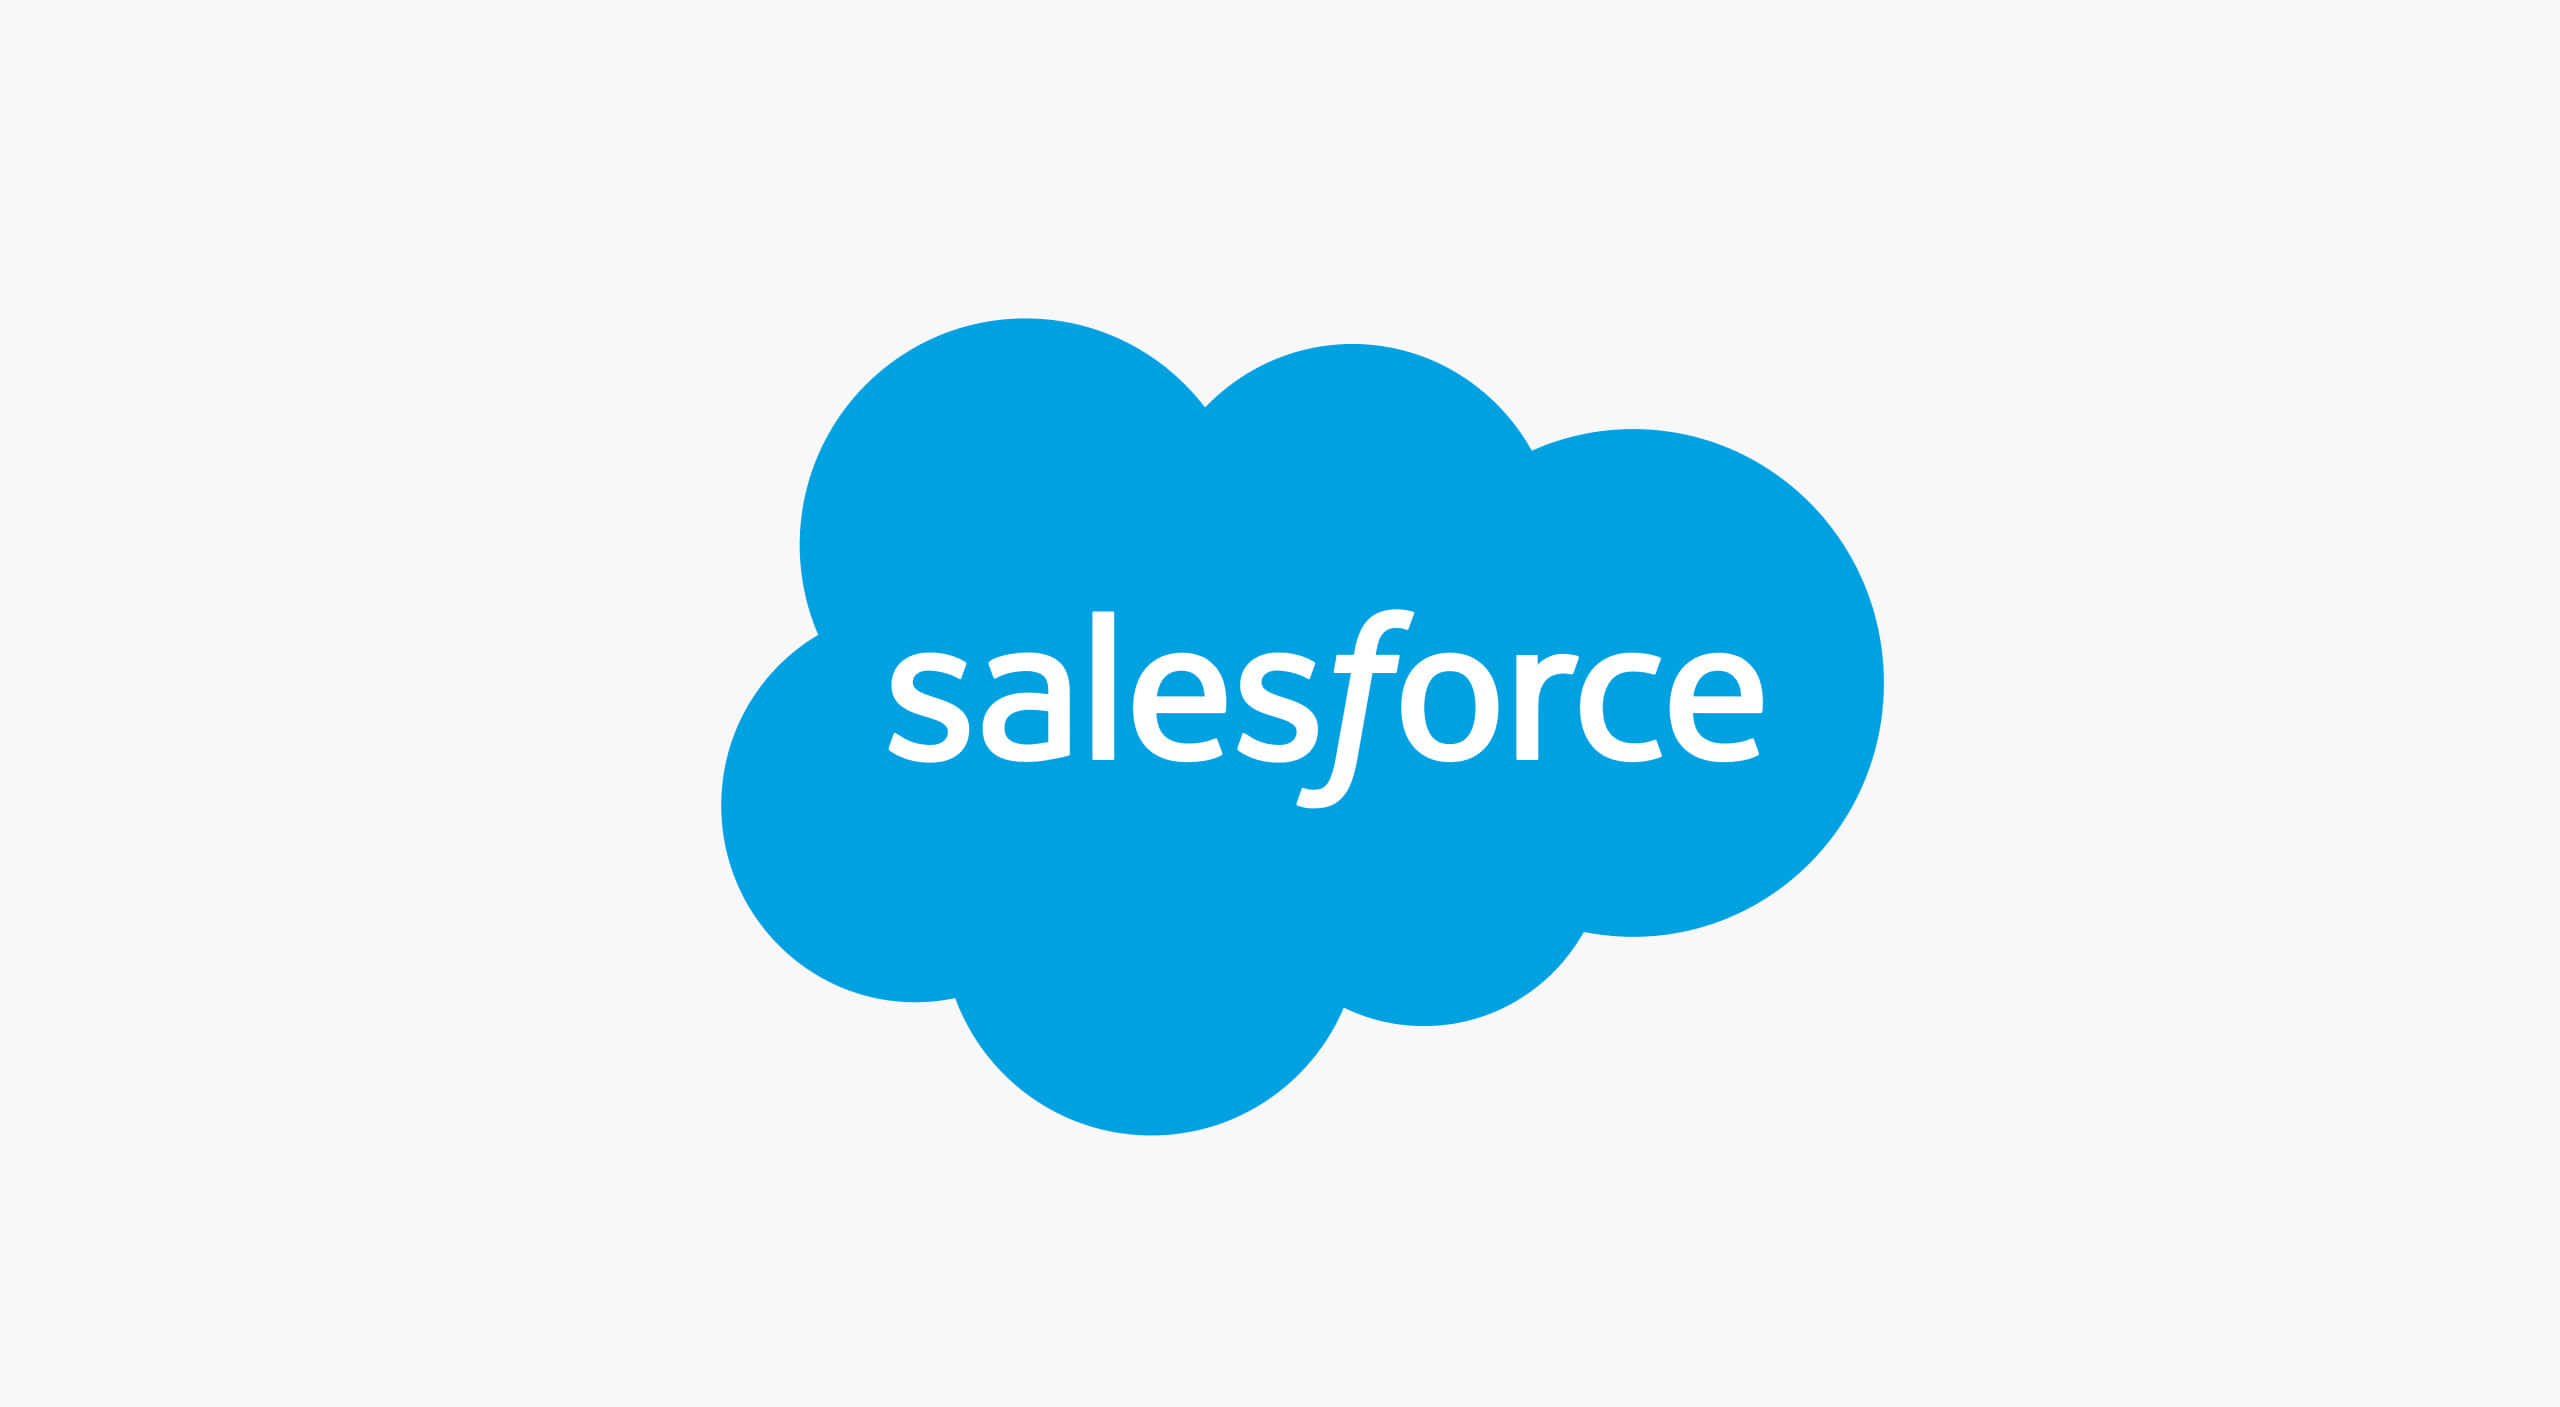 Salesforce Background